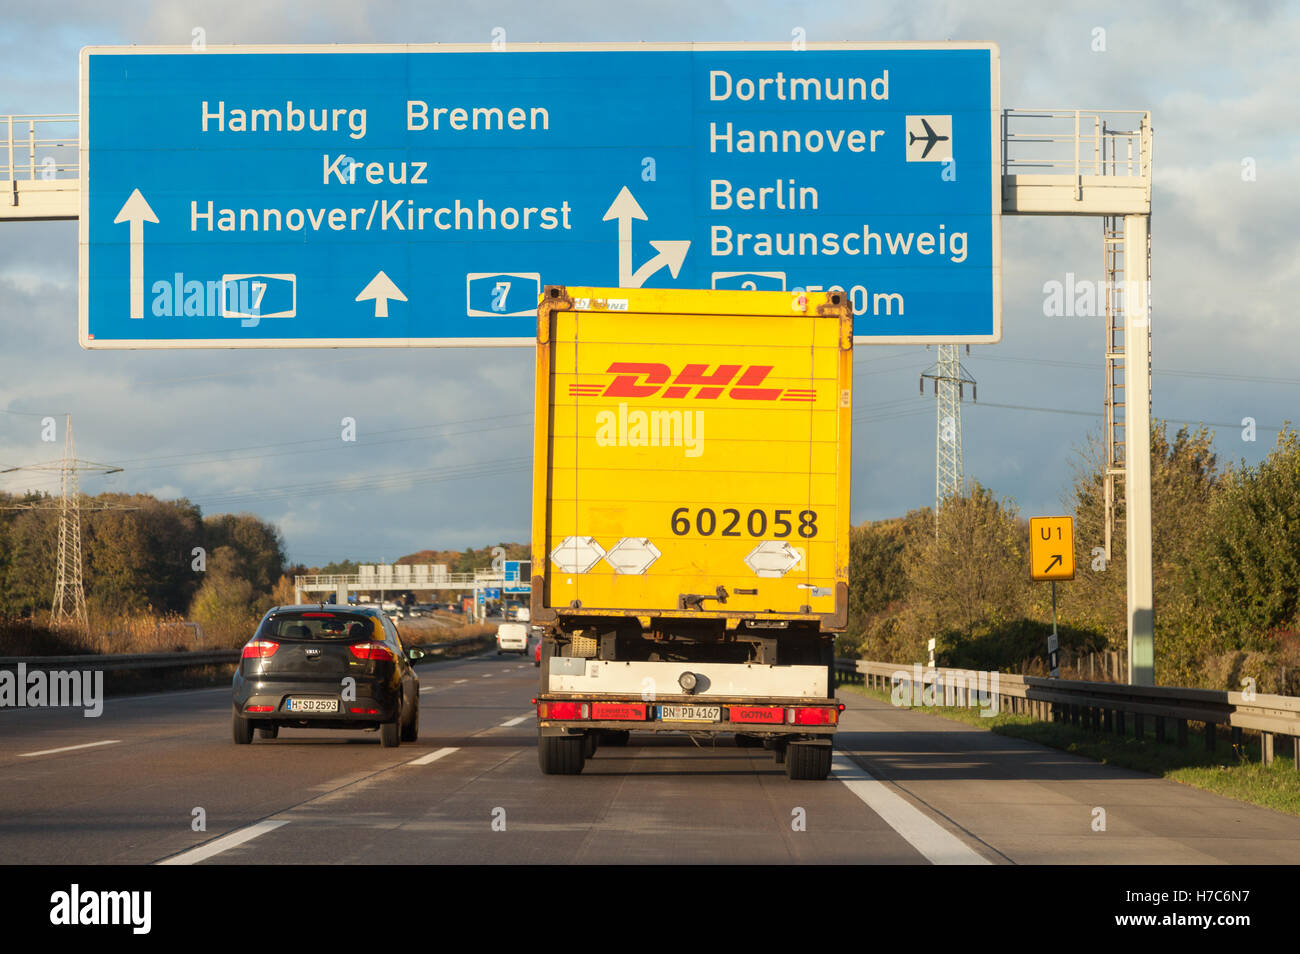 HANNOVER / Deutschland - 2. November 2016: internationale Paket-Service DHL LKW fährt auf deutschen Autobahn A 7 nahe Hannover / Germ Stockfoto